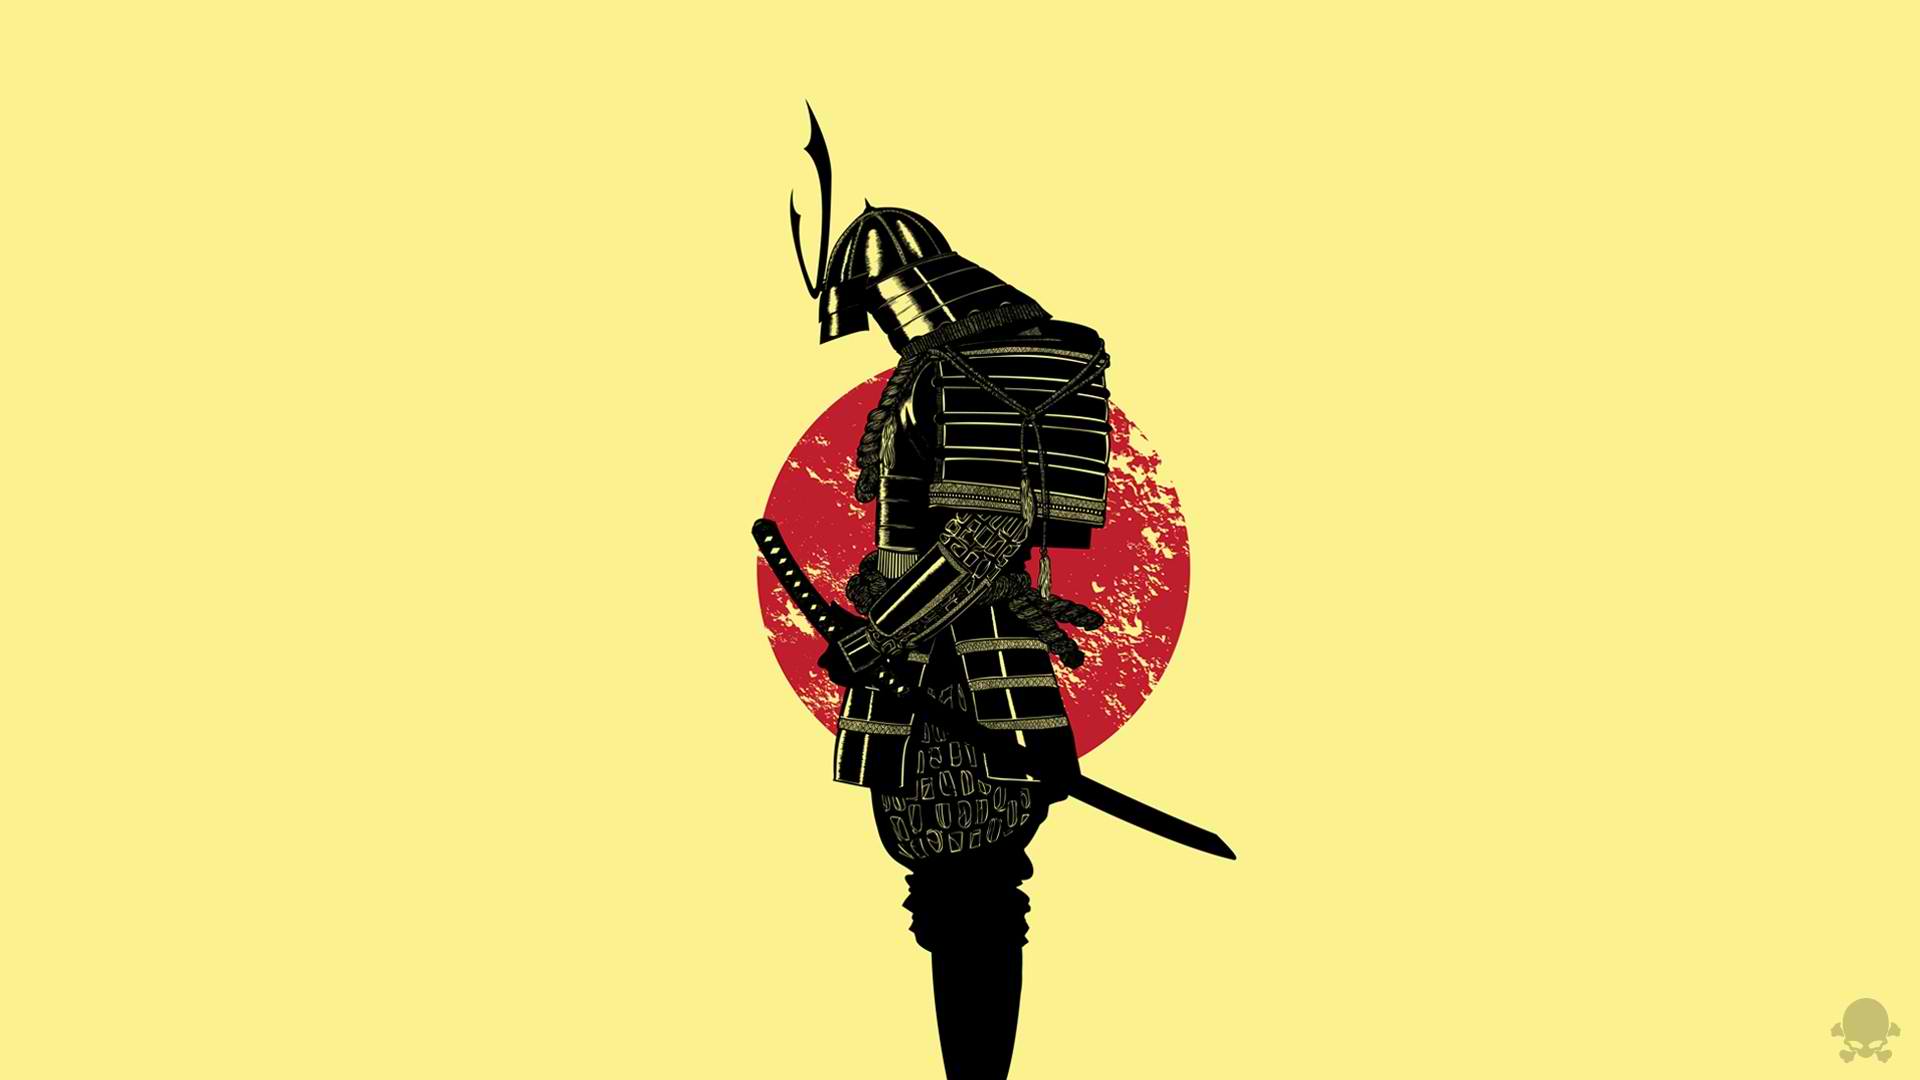 shogun fortnite iPhone Wallpapers Free Download